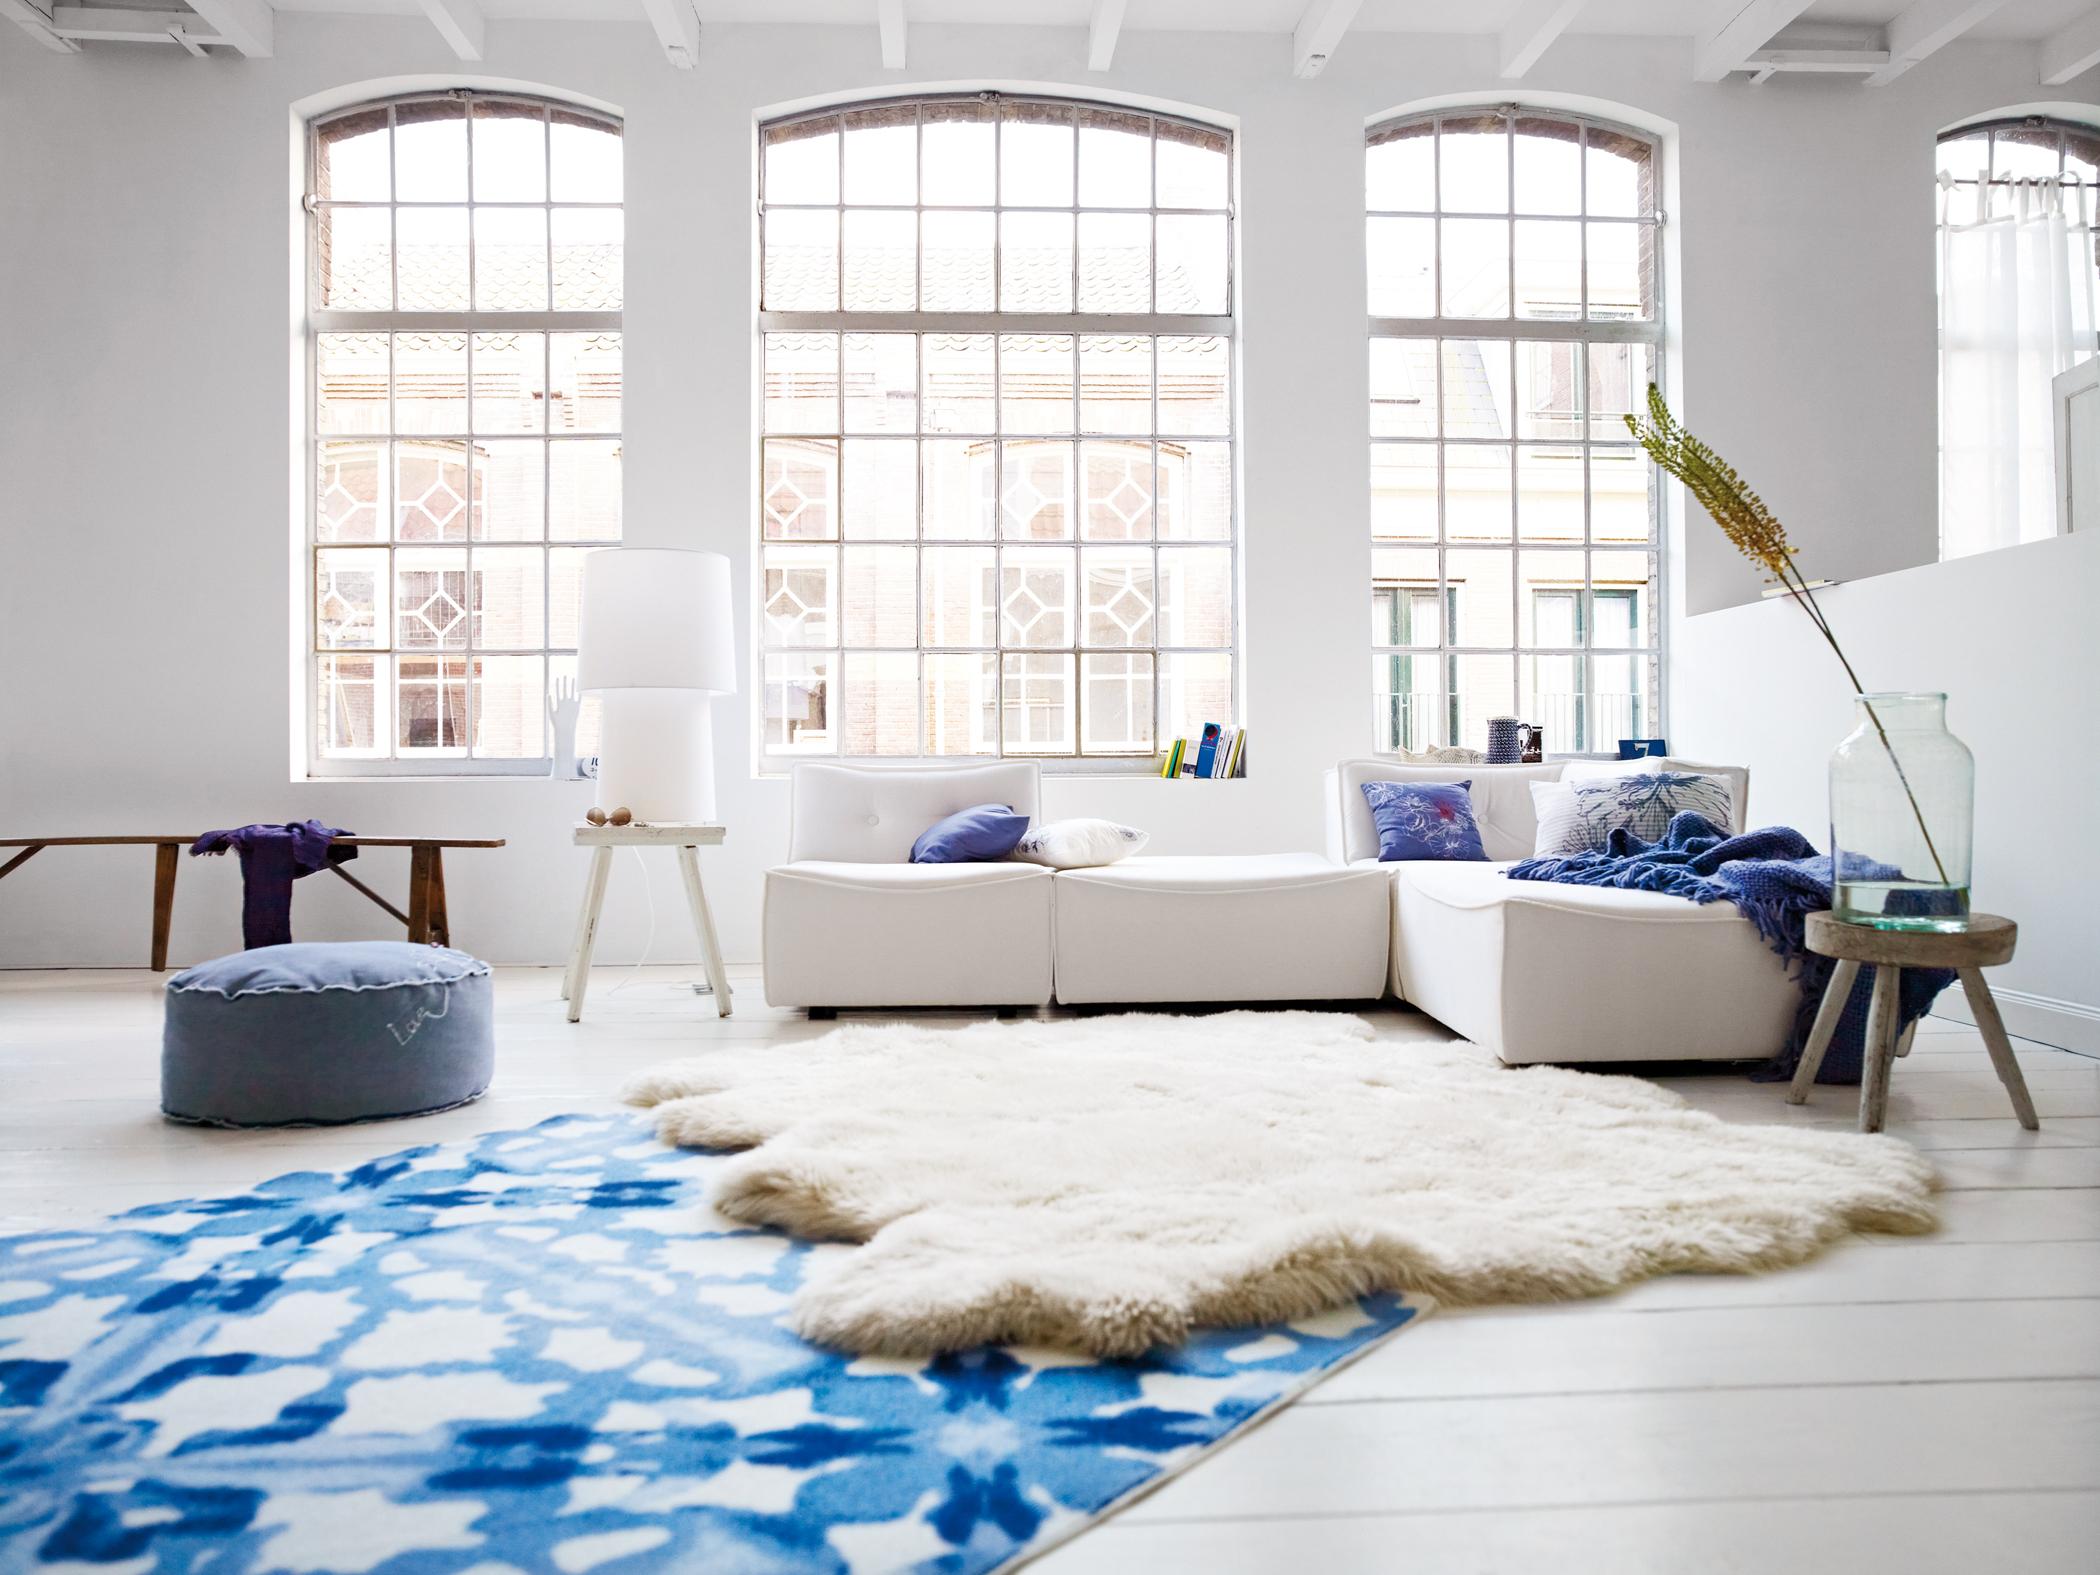 Aquarellfarbener Teppich im modernen Industrie-Chic #fensterfront #sitzbank #sofakissen #industriedesign #lammfell #hausgestaltung ©Esprit Home